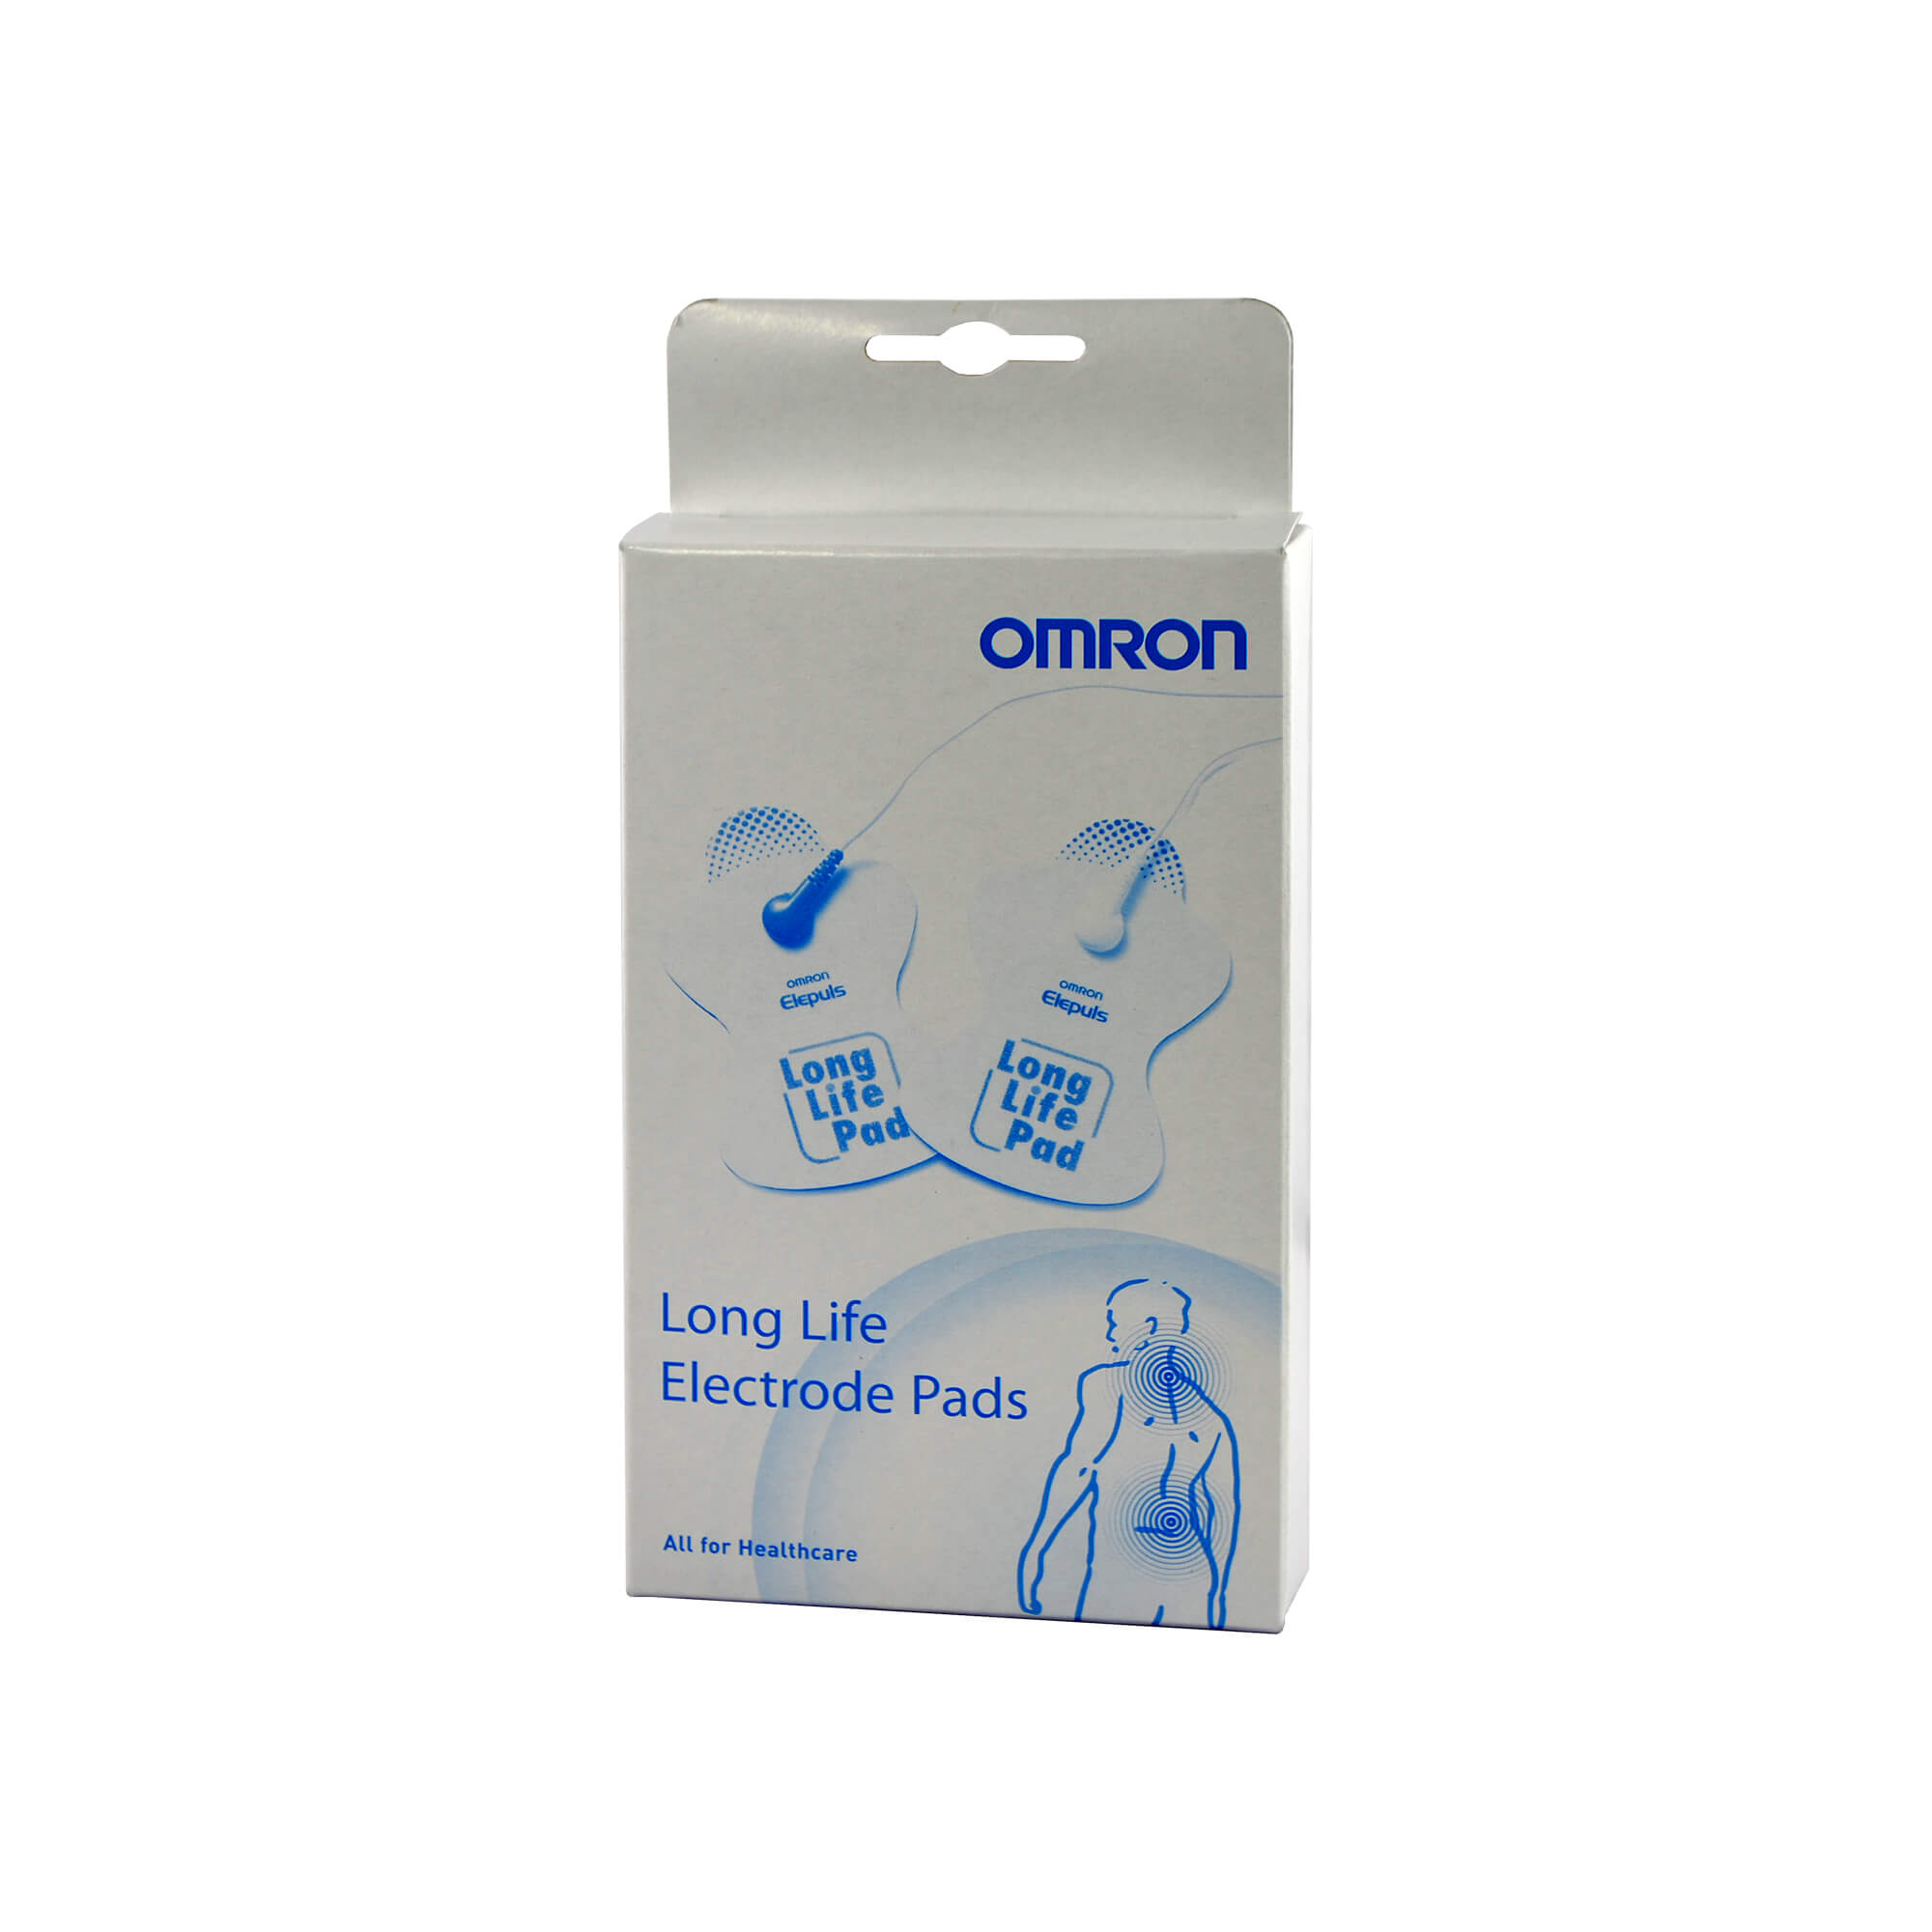 Haltbare, waschbare Elektroden, die mit sämtlichen Omron Tens Geräten verwendet werden können.